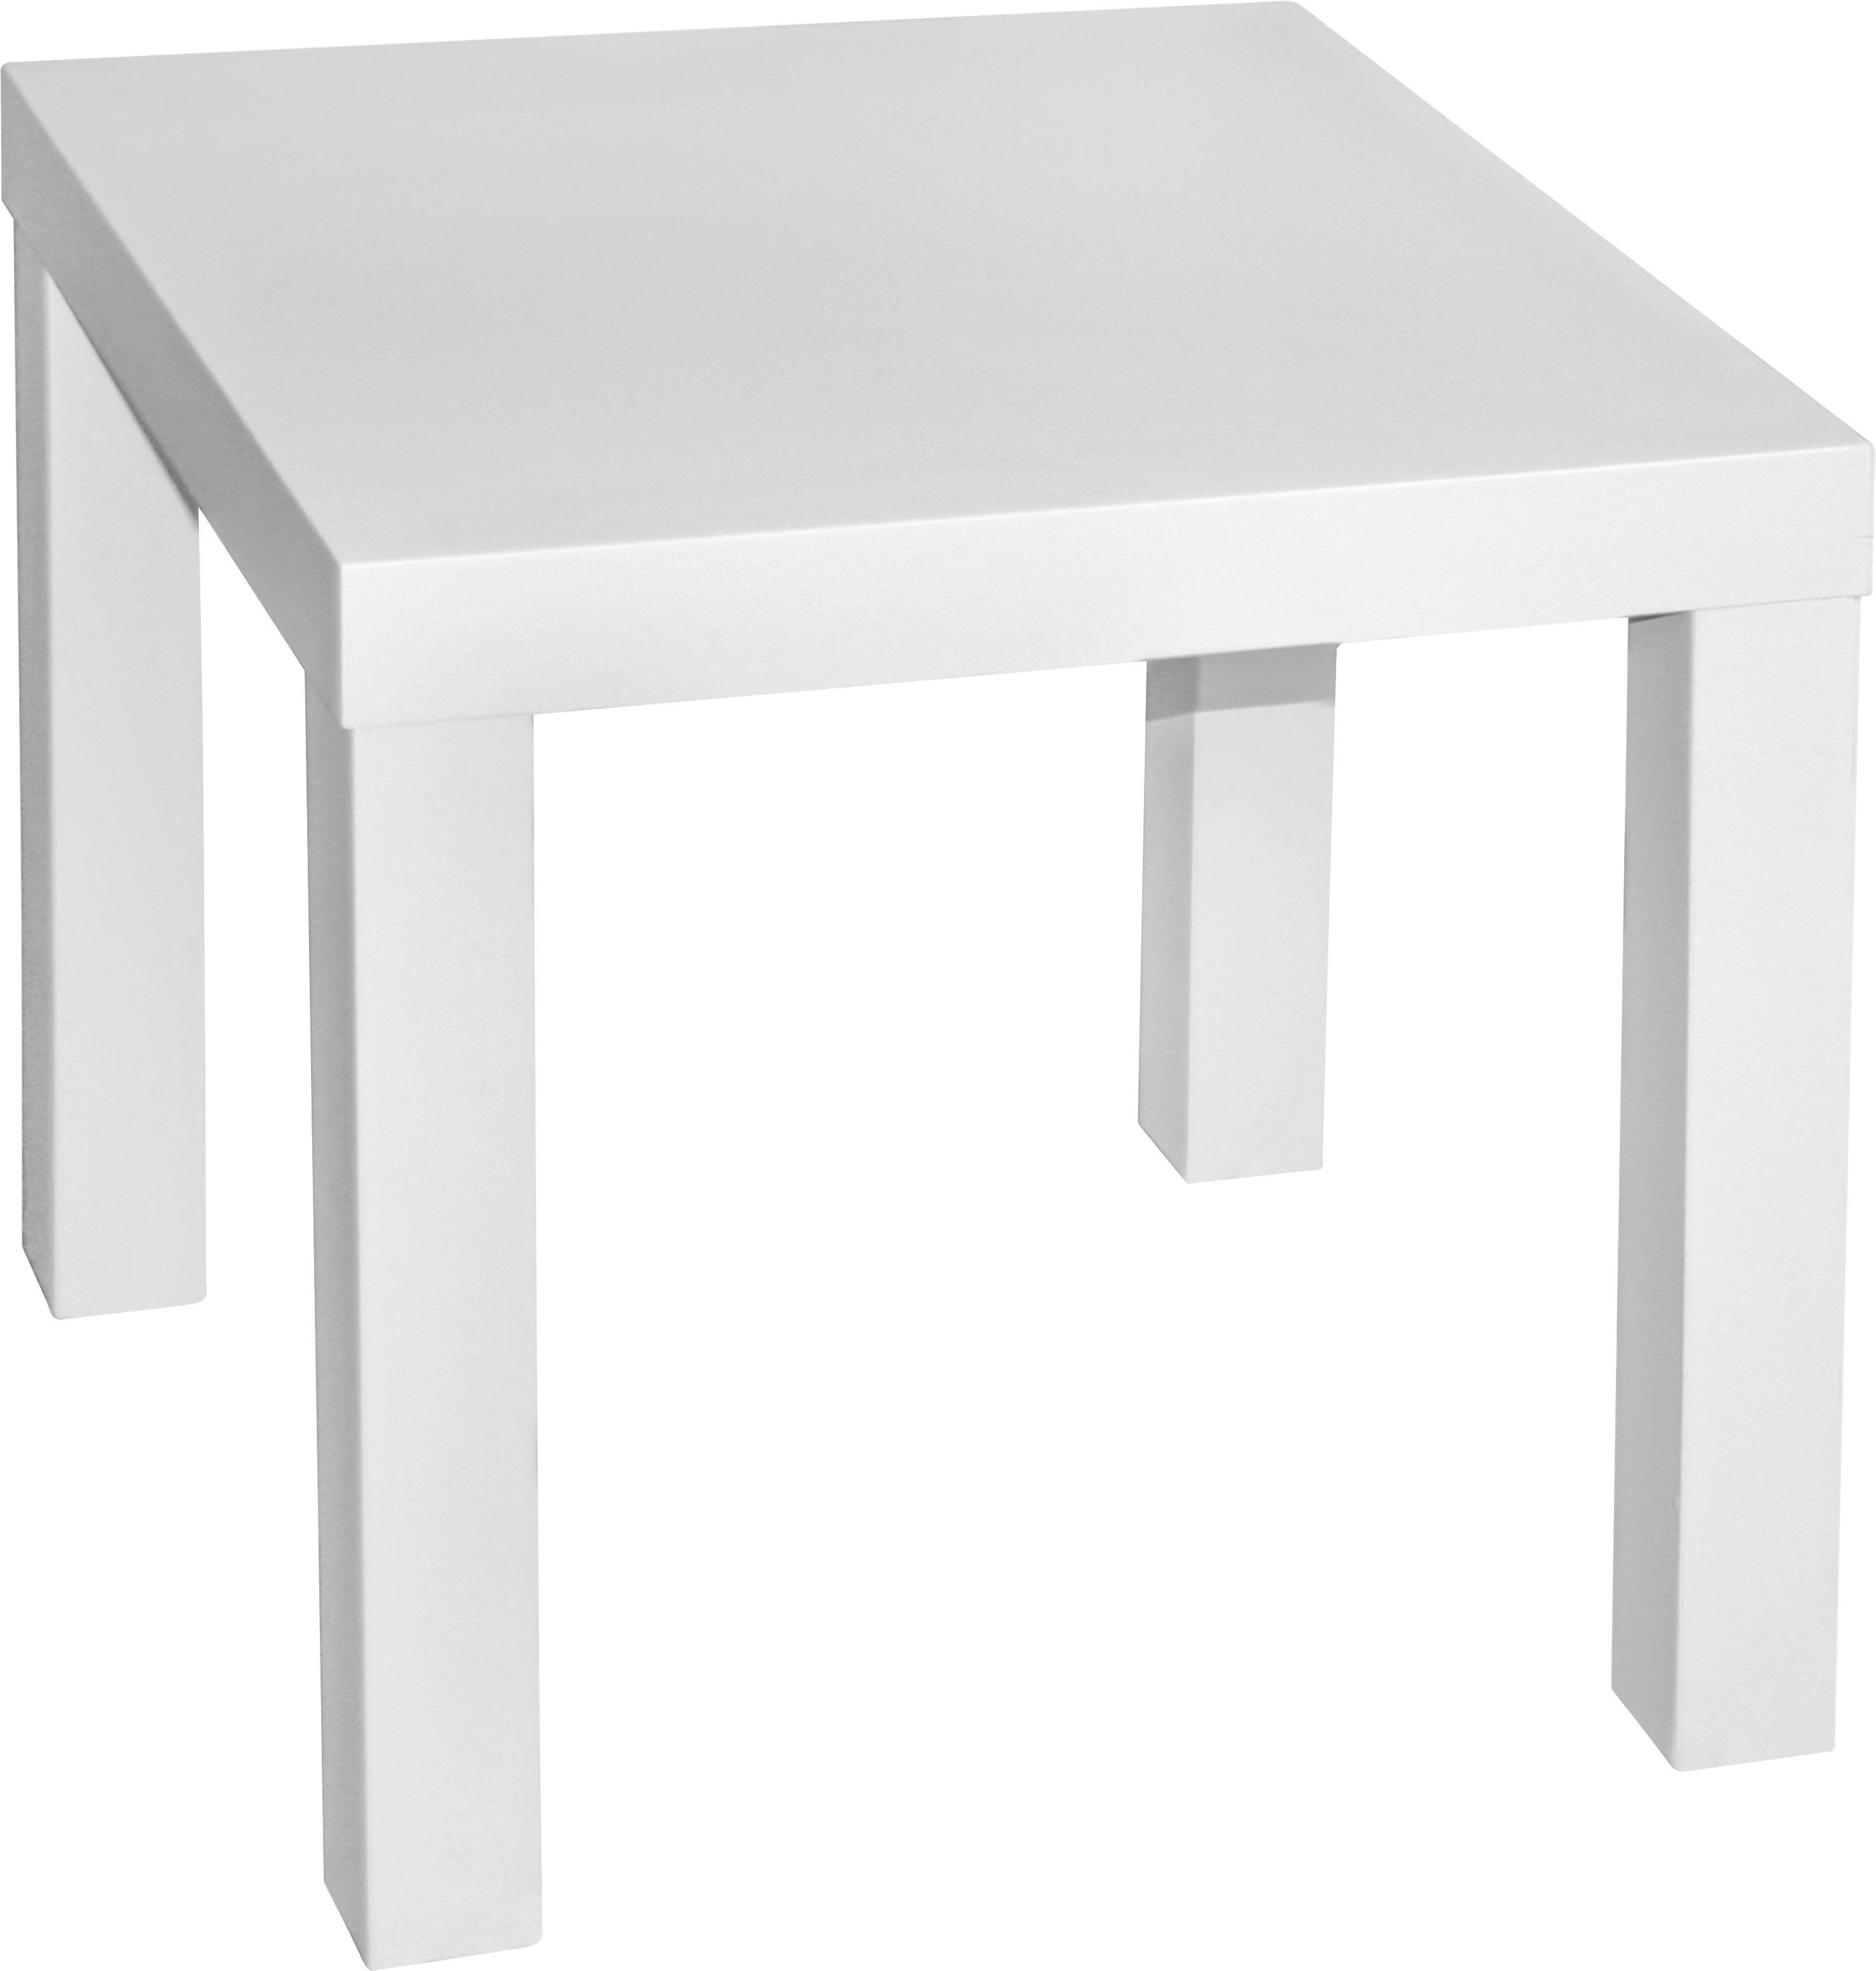 Odkládací Stolek Normen *cenovy Trhak* - bílá, Moderní, kompozitní dřevo (39/40/39cm)